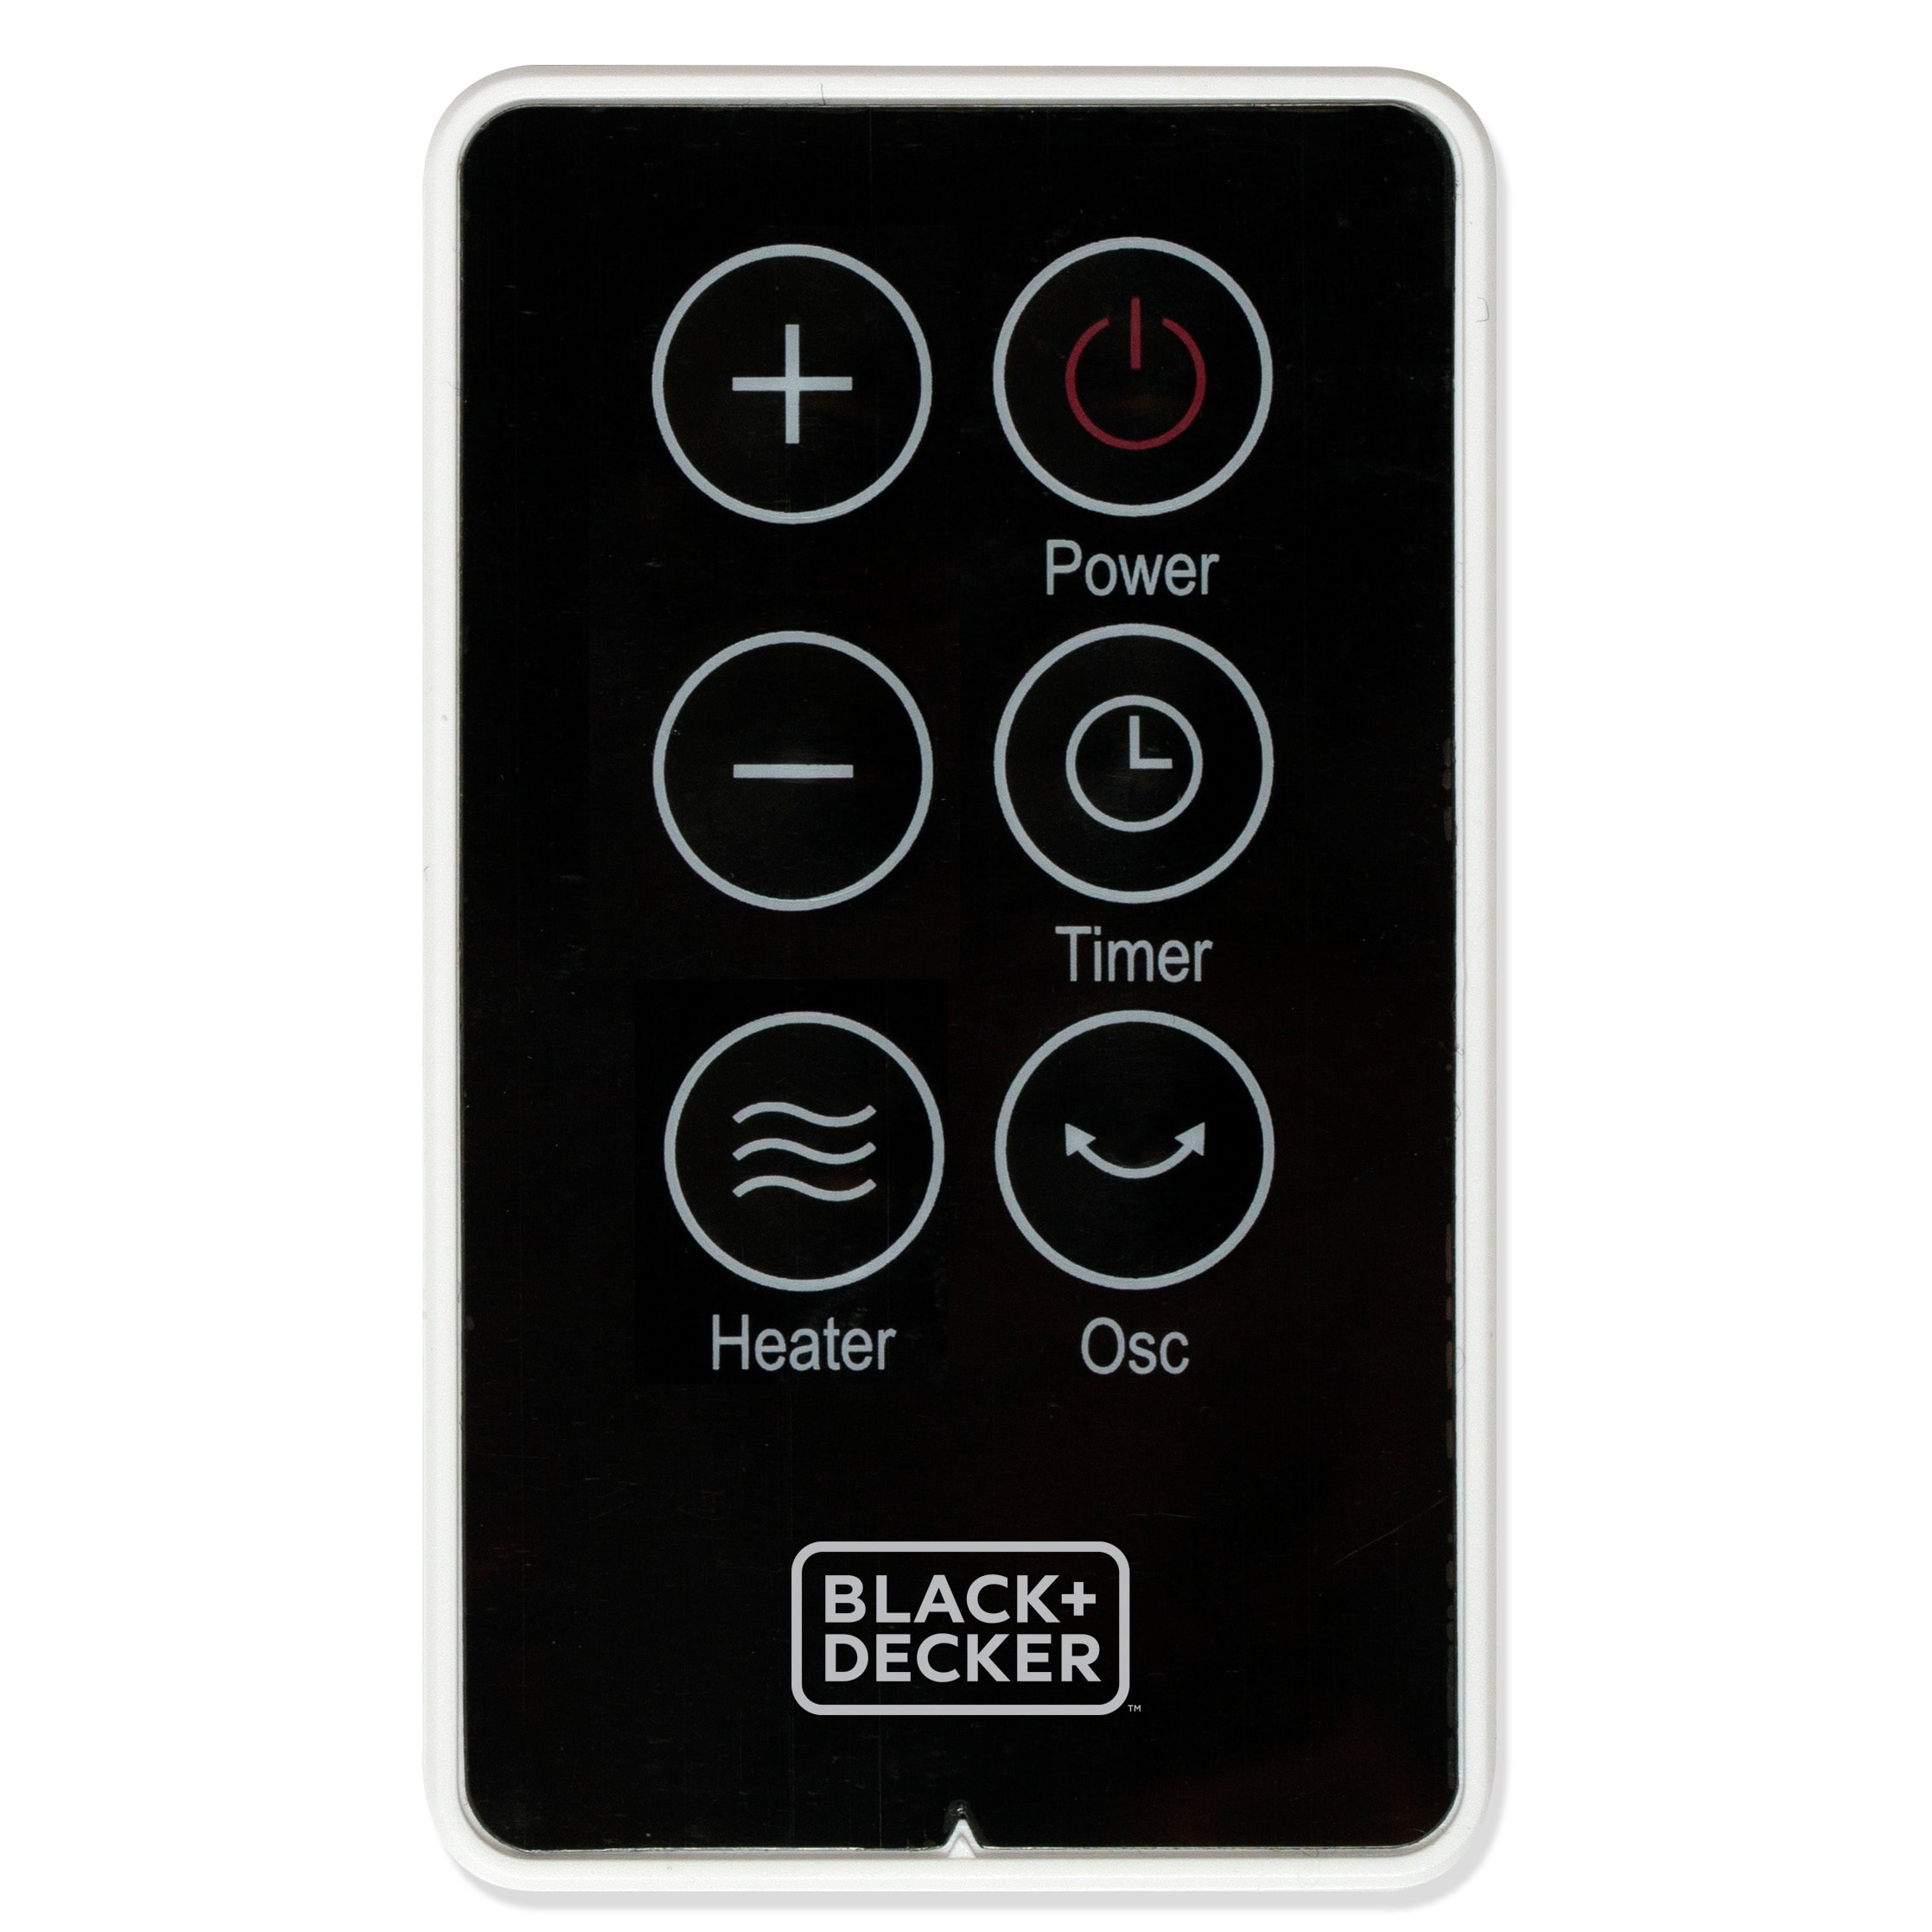 Black + Decker BLACK+DECKER 1500 Watt 5115 BTU Electric Compact